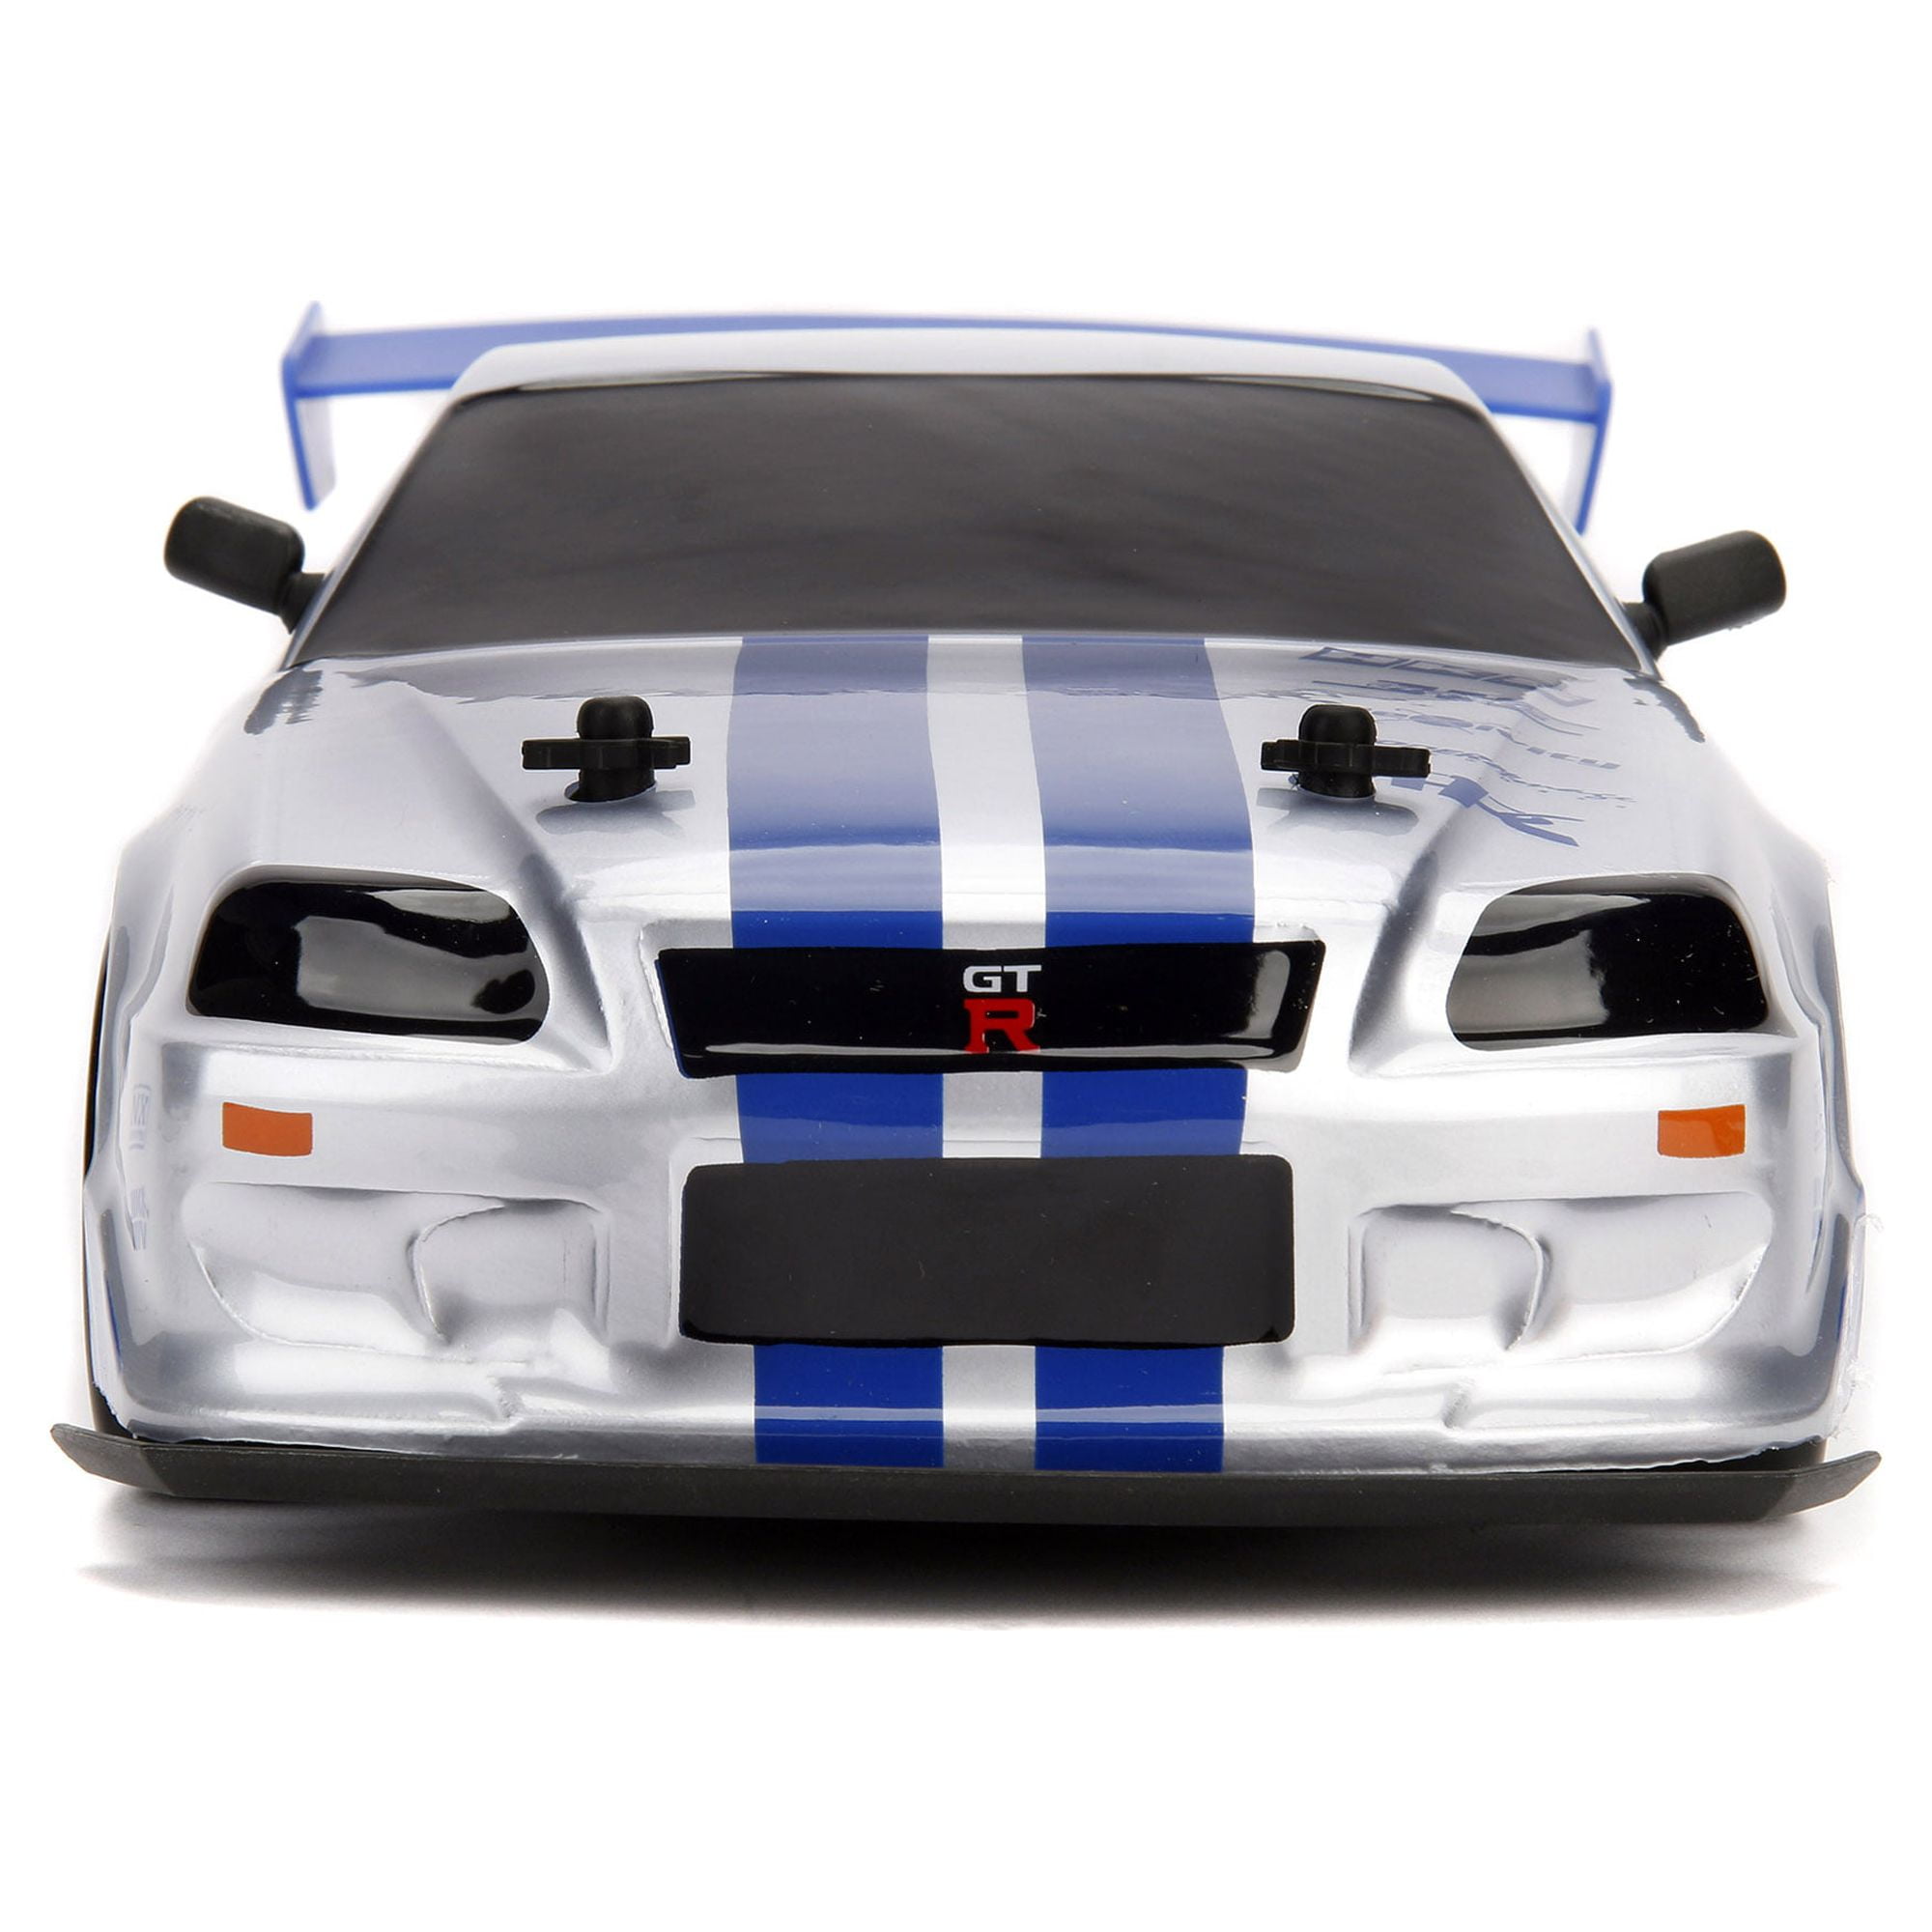 Nissan Skyline GT-R Driftcar  Rc drift cars, Drifting cars, Nissan skyline